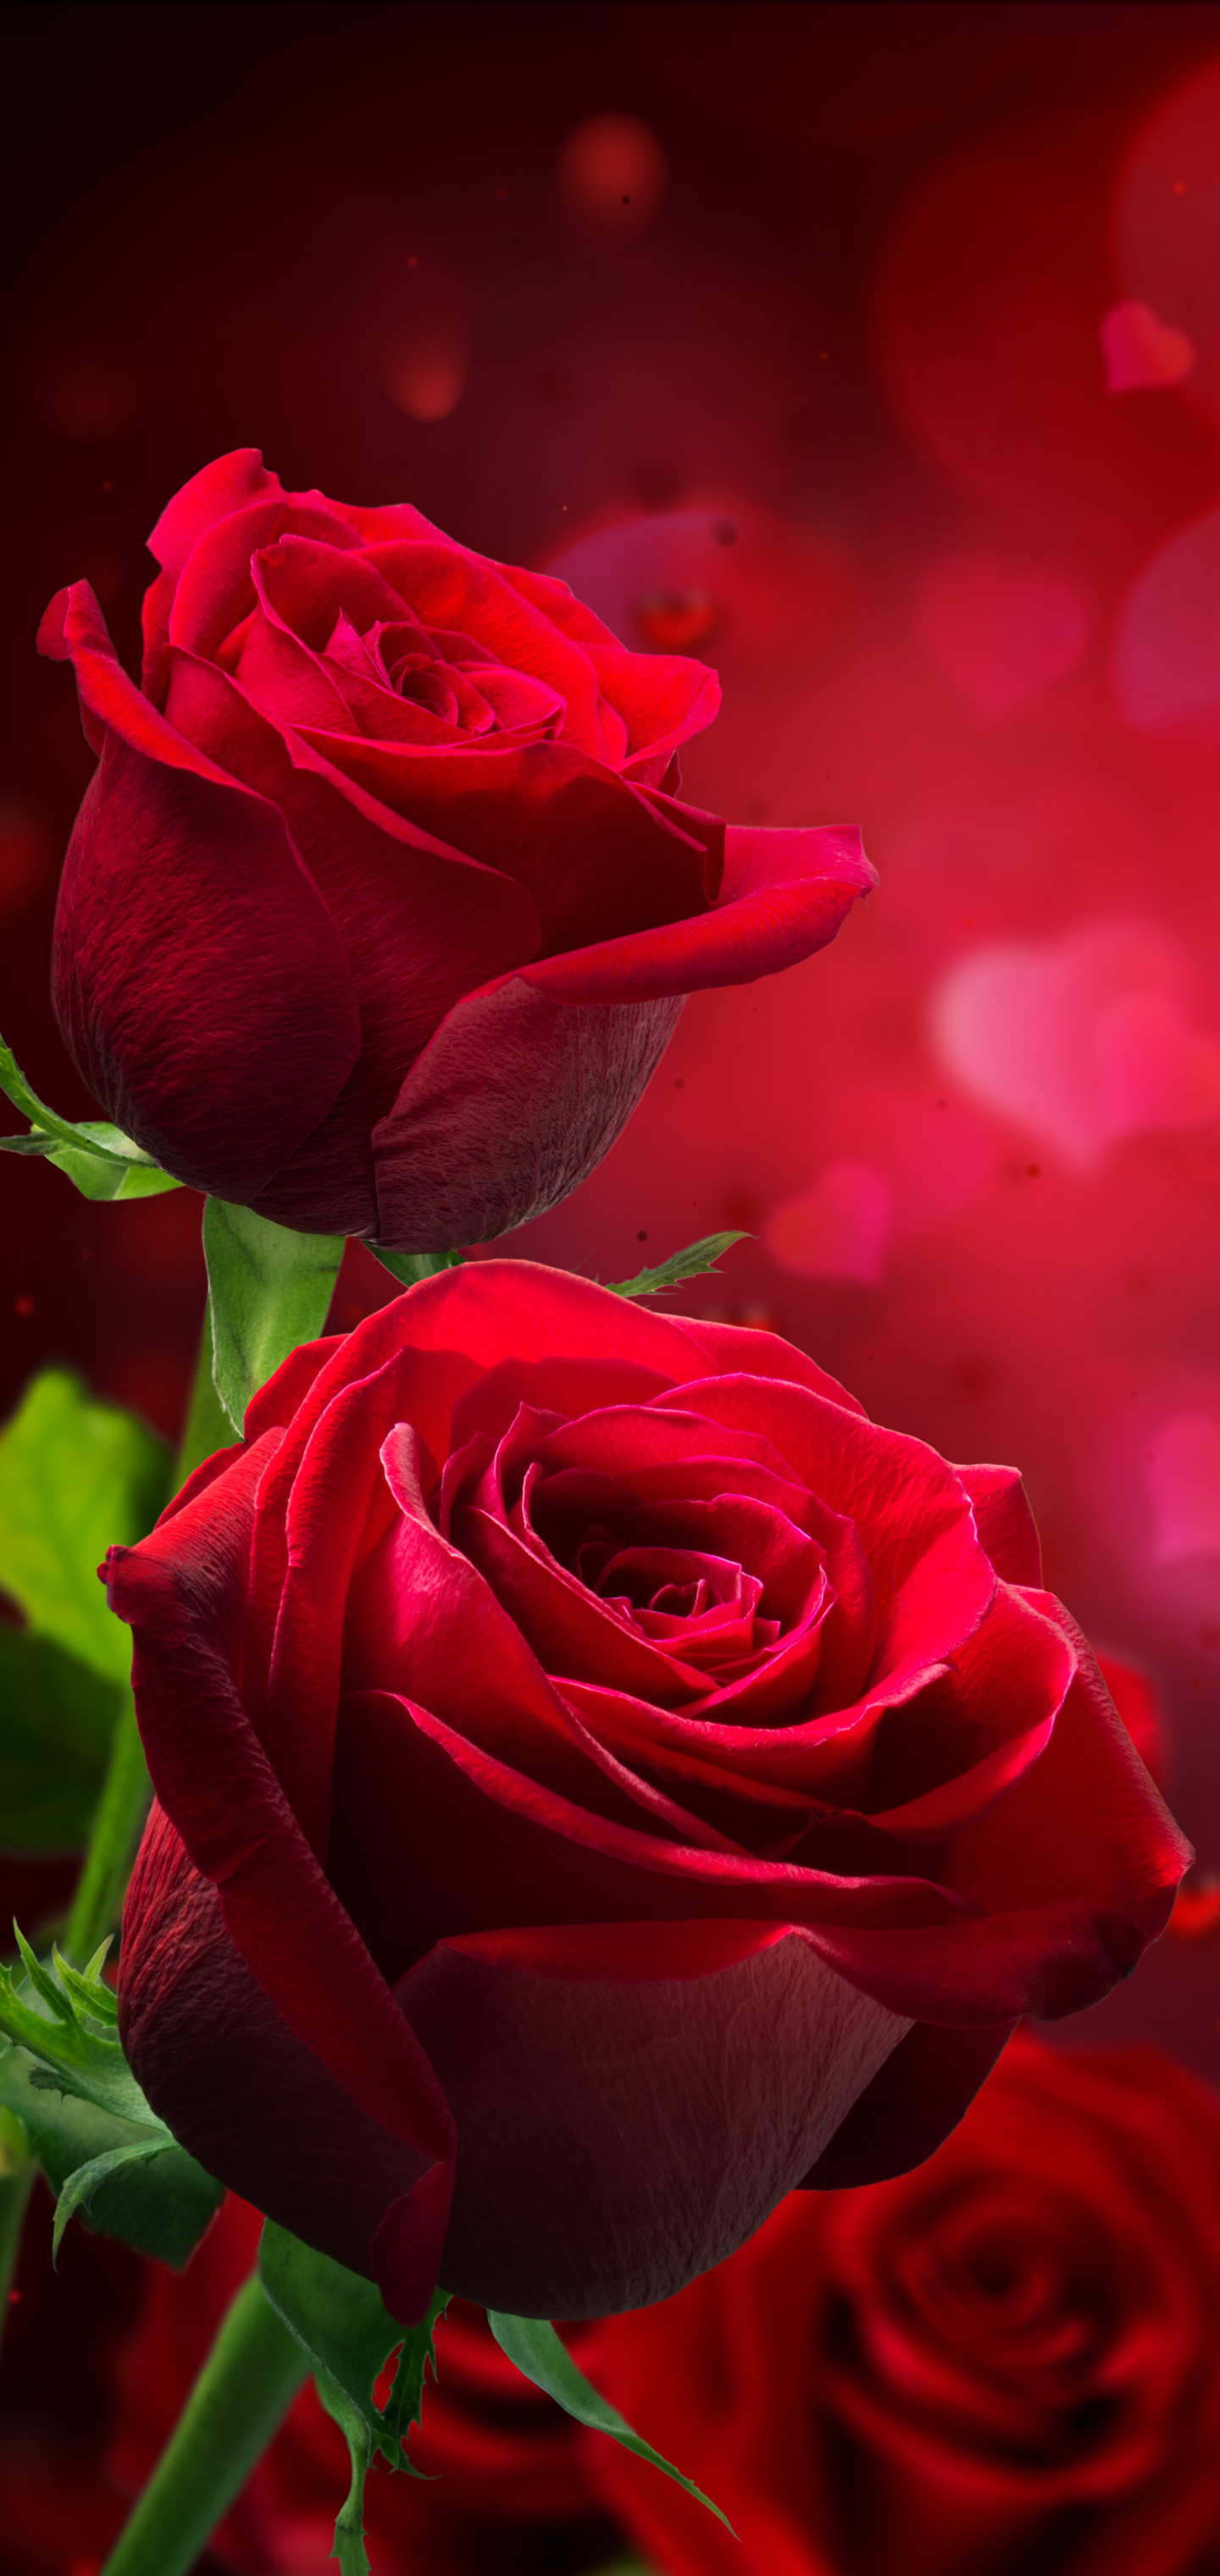 Скачать обои бесплатно Роза, Боке, Красная Роза, Красный Цветок, Земля/природа, Флауэрсы картинка на рабочий стол ПК